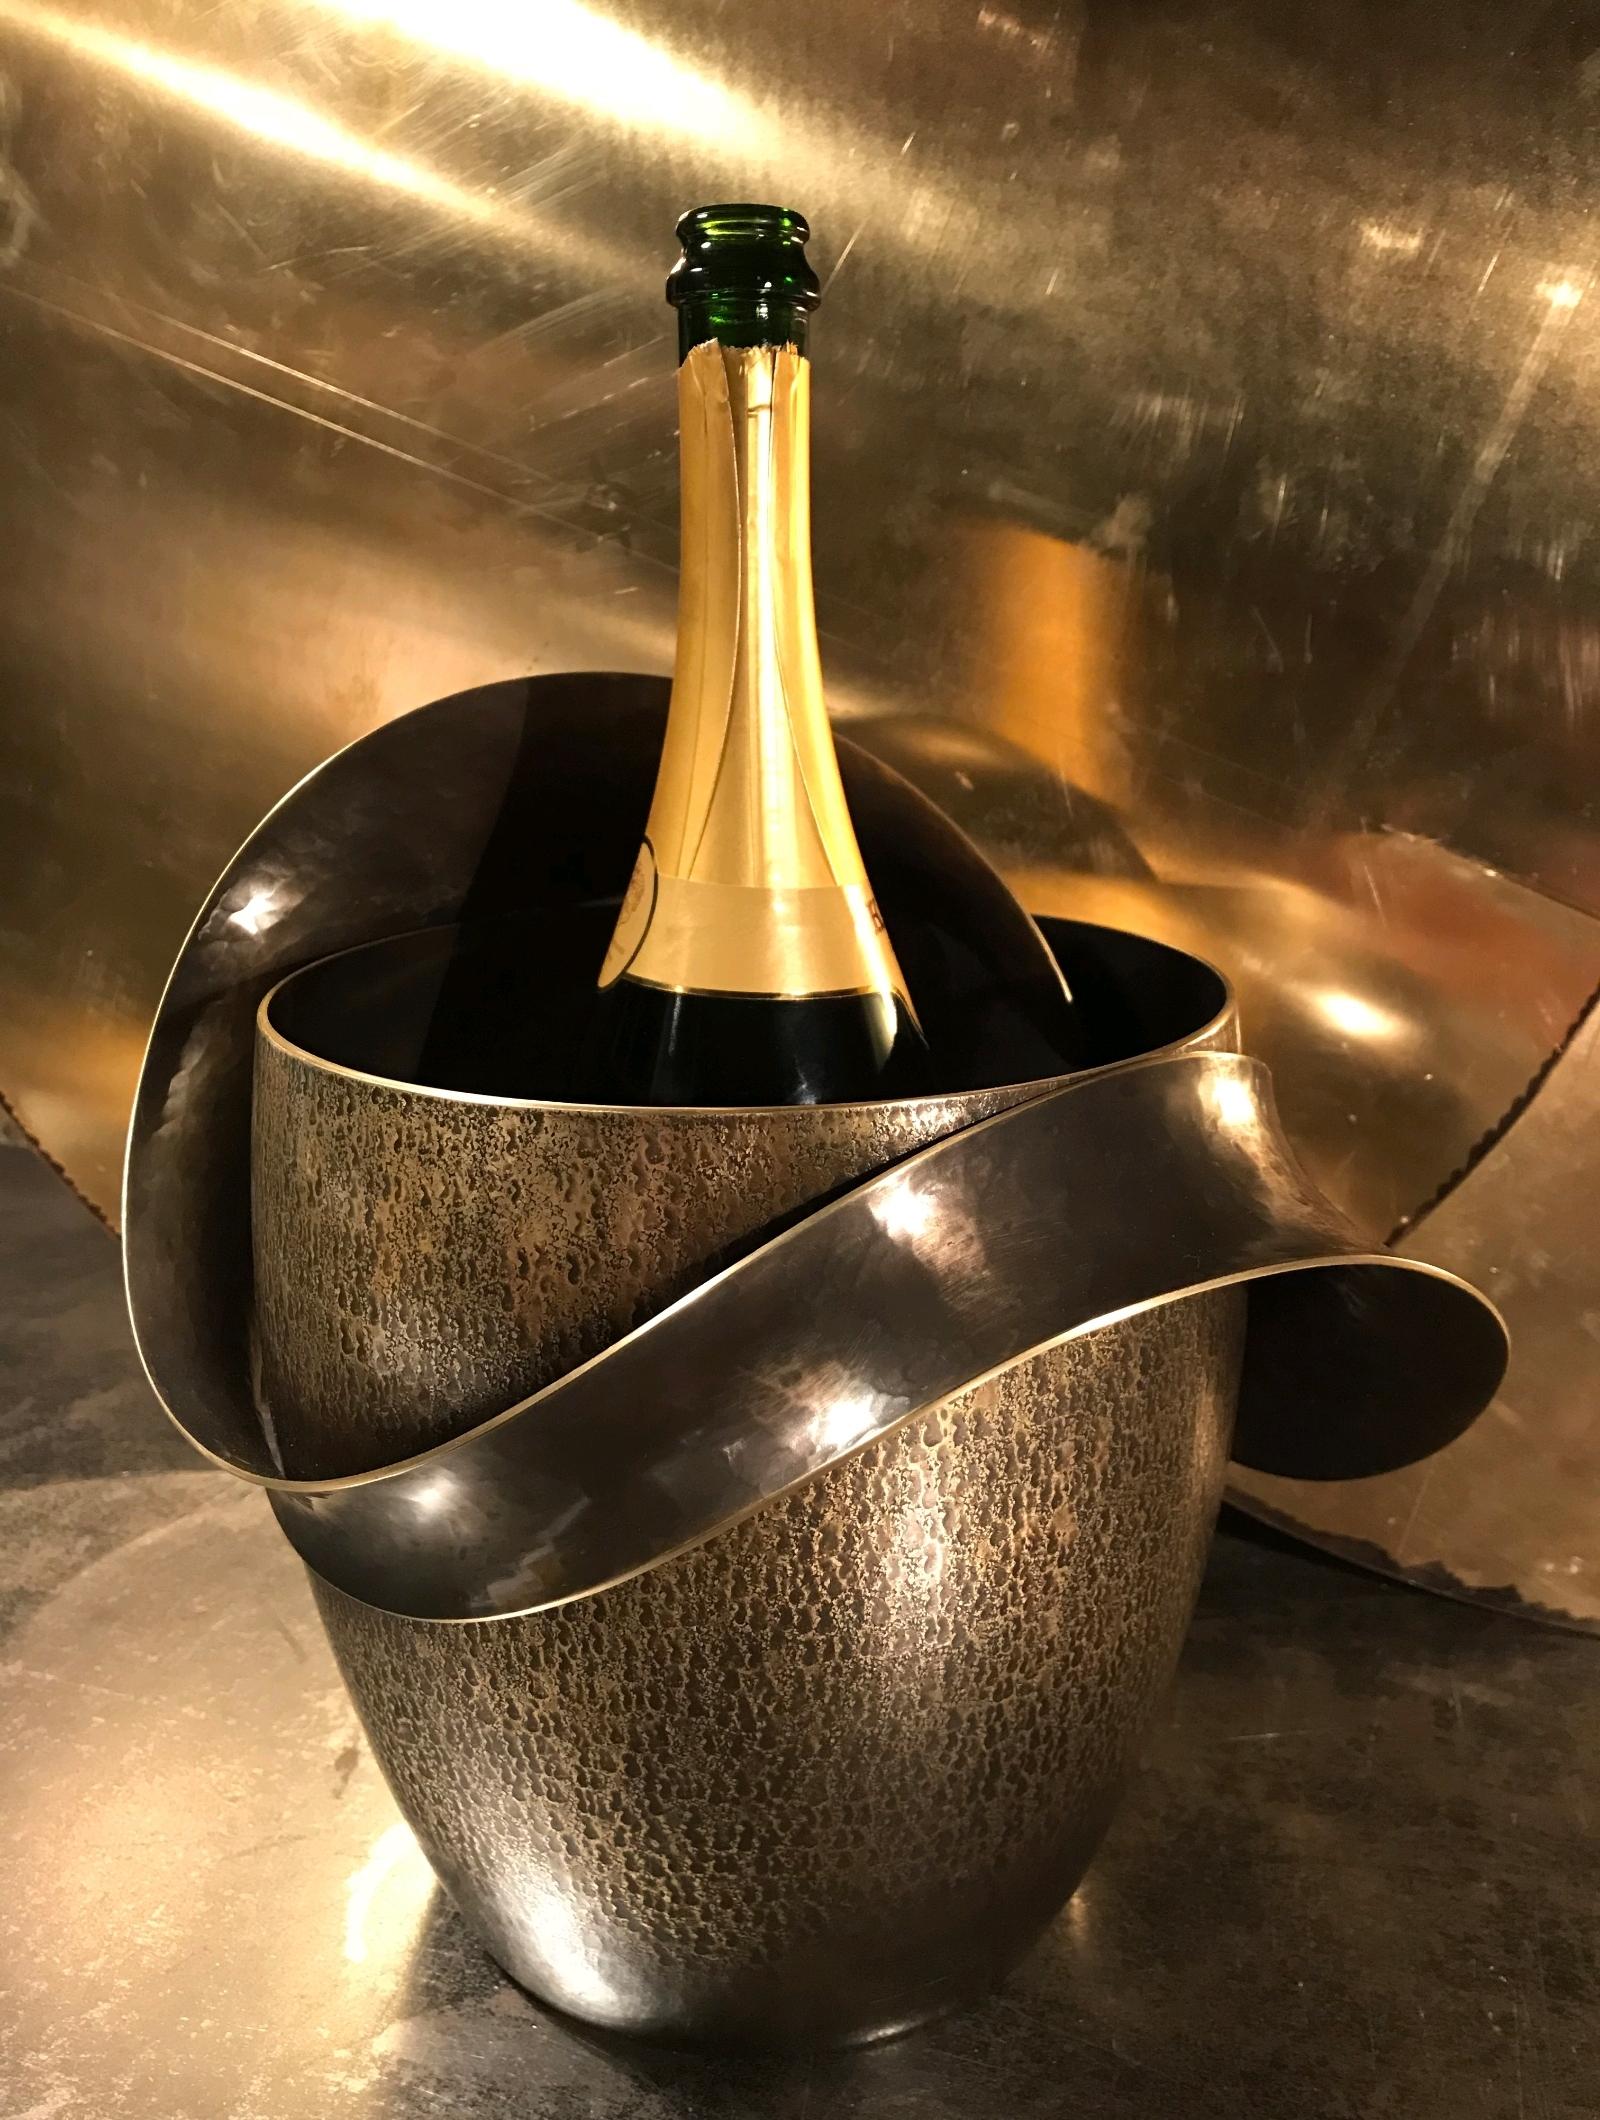 Magnifique seau à champagne et à vin, unique en son genre, réalisé par un designer, à propos de l'artiste :
Laiton poli.

A propos de l'artiste : E.H.
Diplômé en design céramique et en sculpture métallique (2001, 2003), il a travaillé pendant